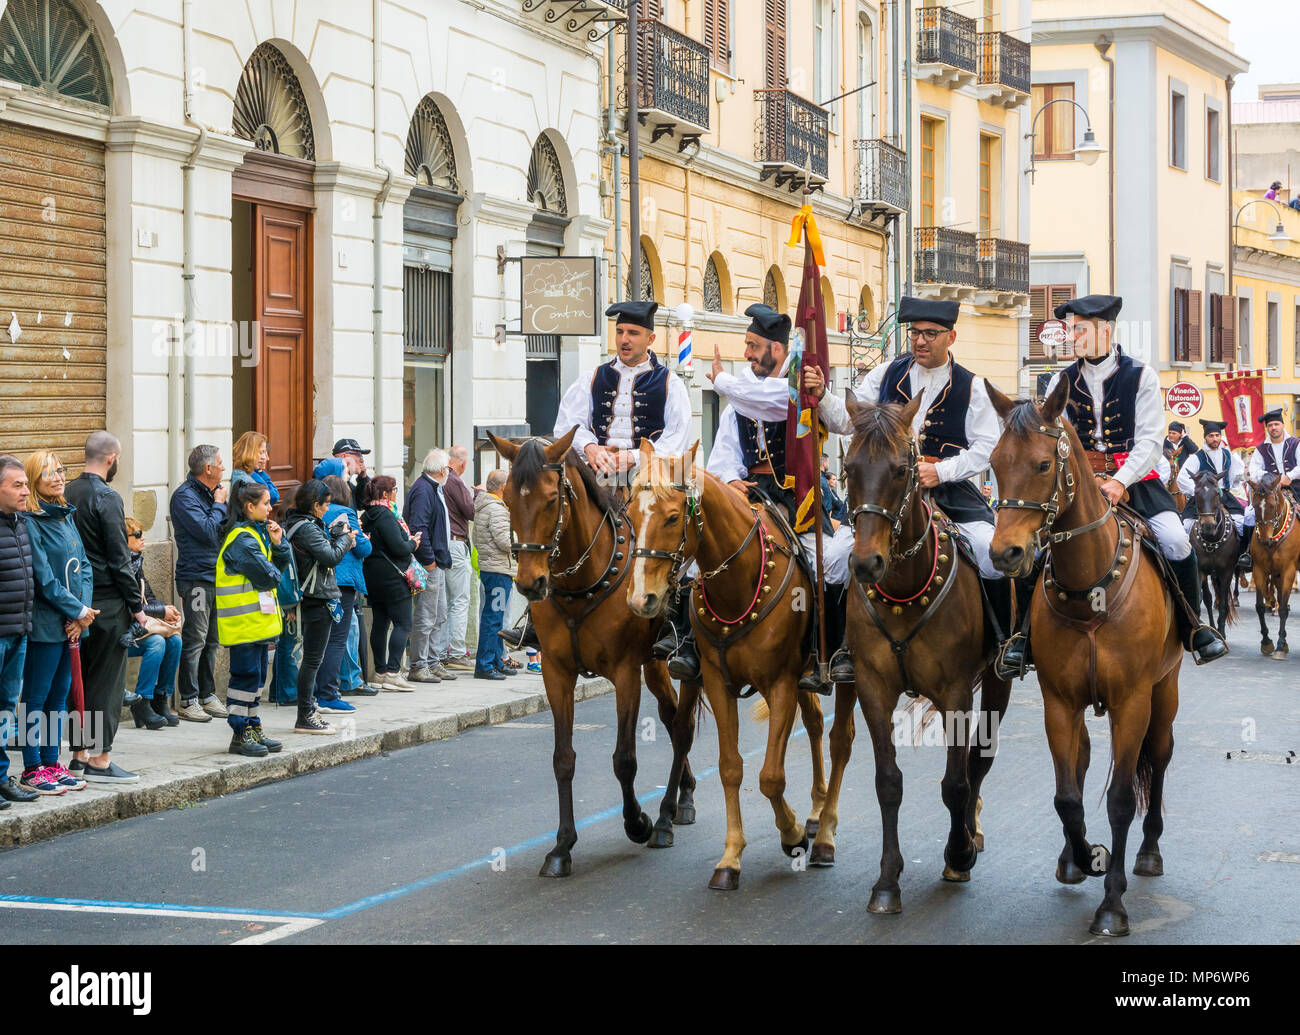 CAGLIARI, Italie - 1 mai 2018 : La célèbre fête de Sant'Efisio en Sardaigne. Groupe de personnes qui portaient tous les costumes traditionnels de leur village. Banque D'Images